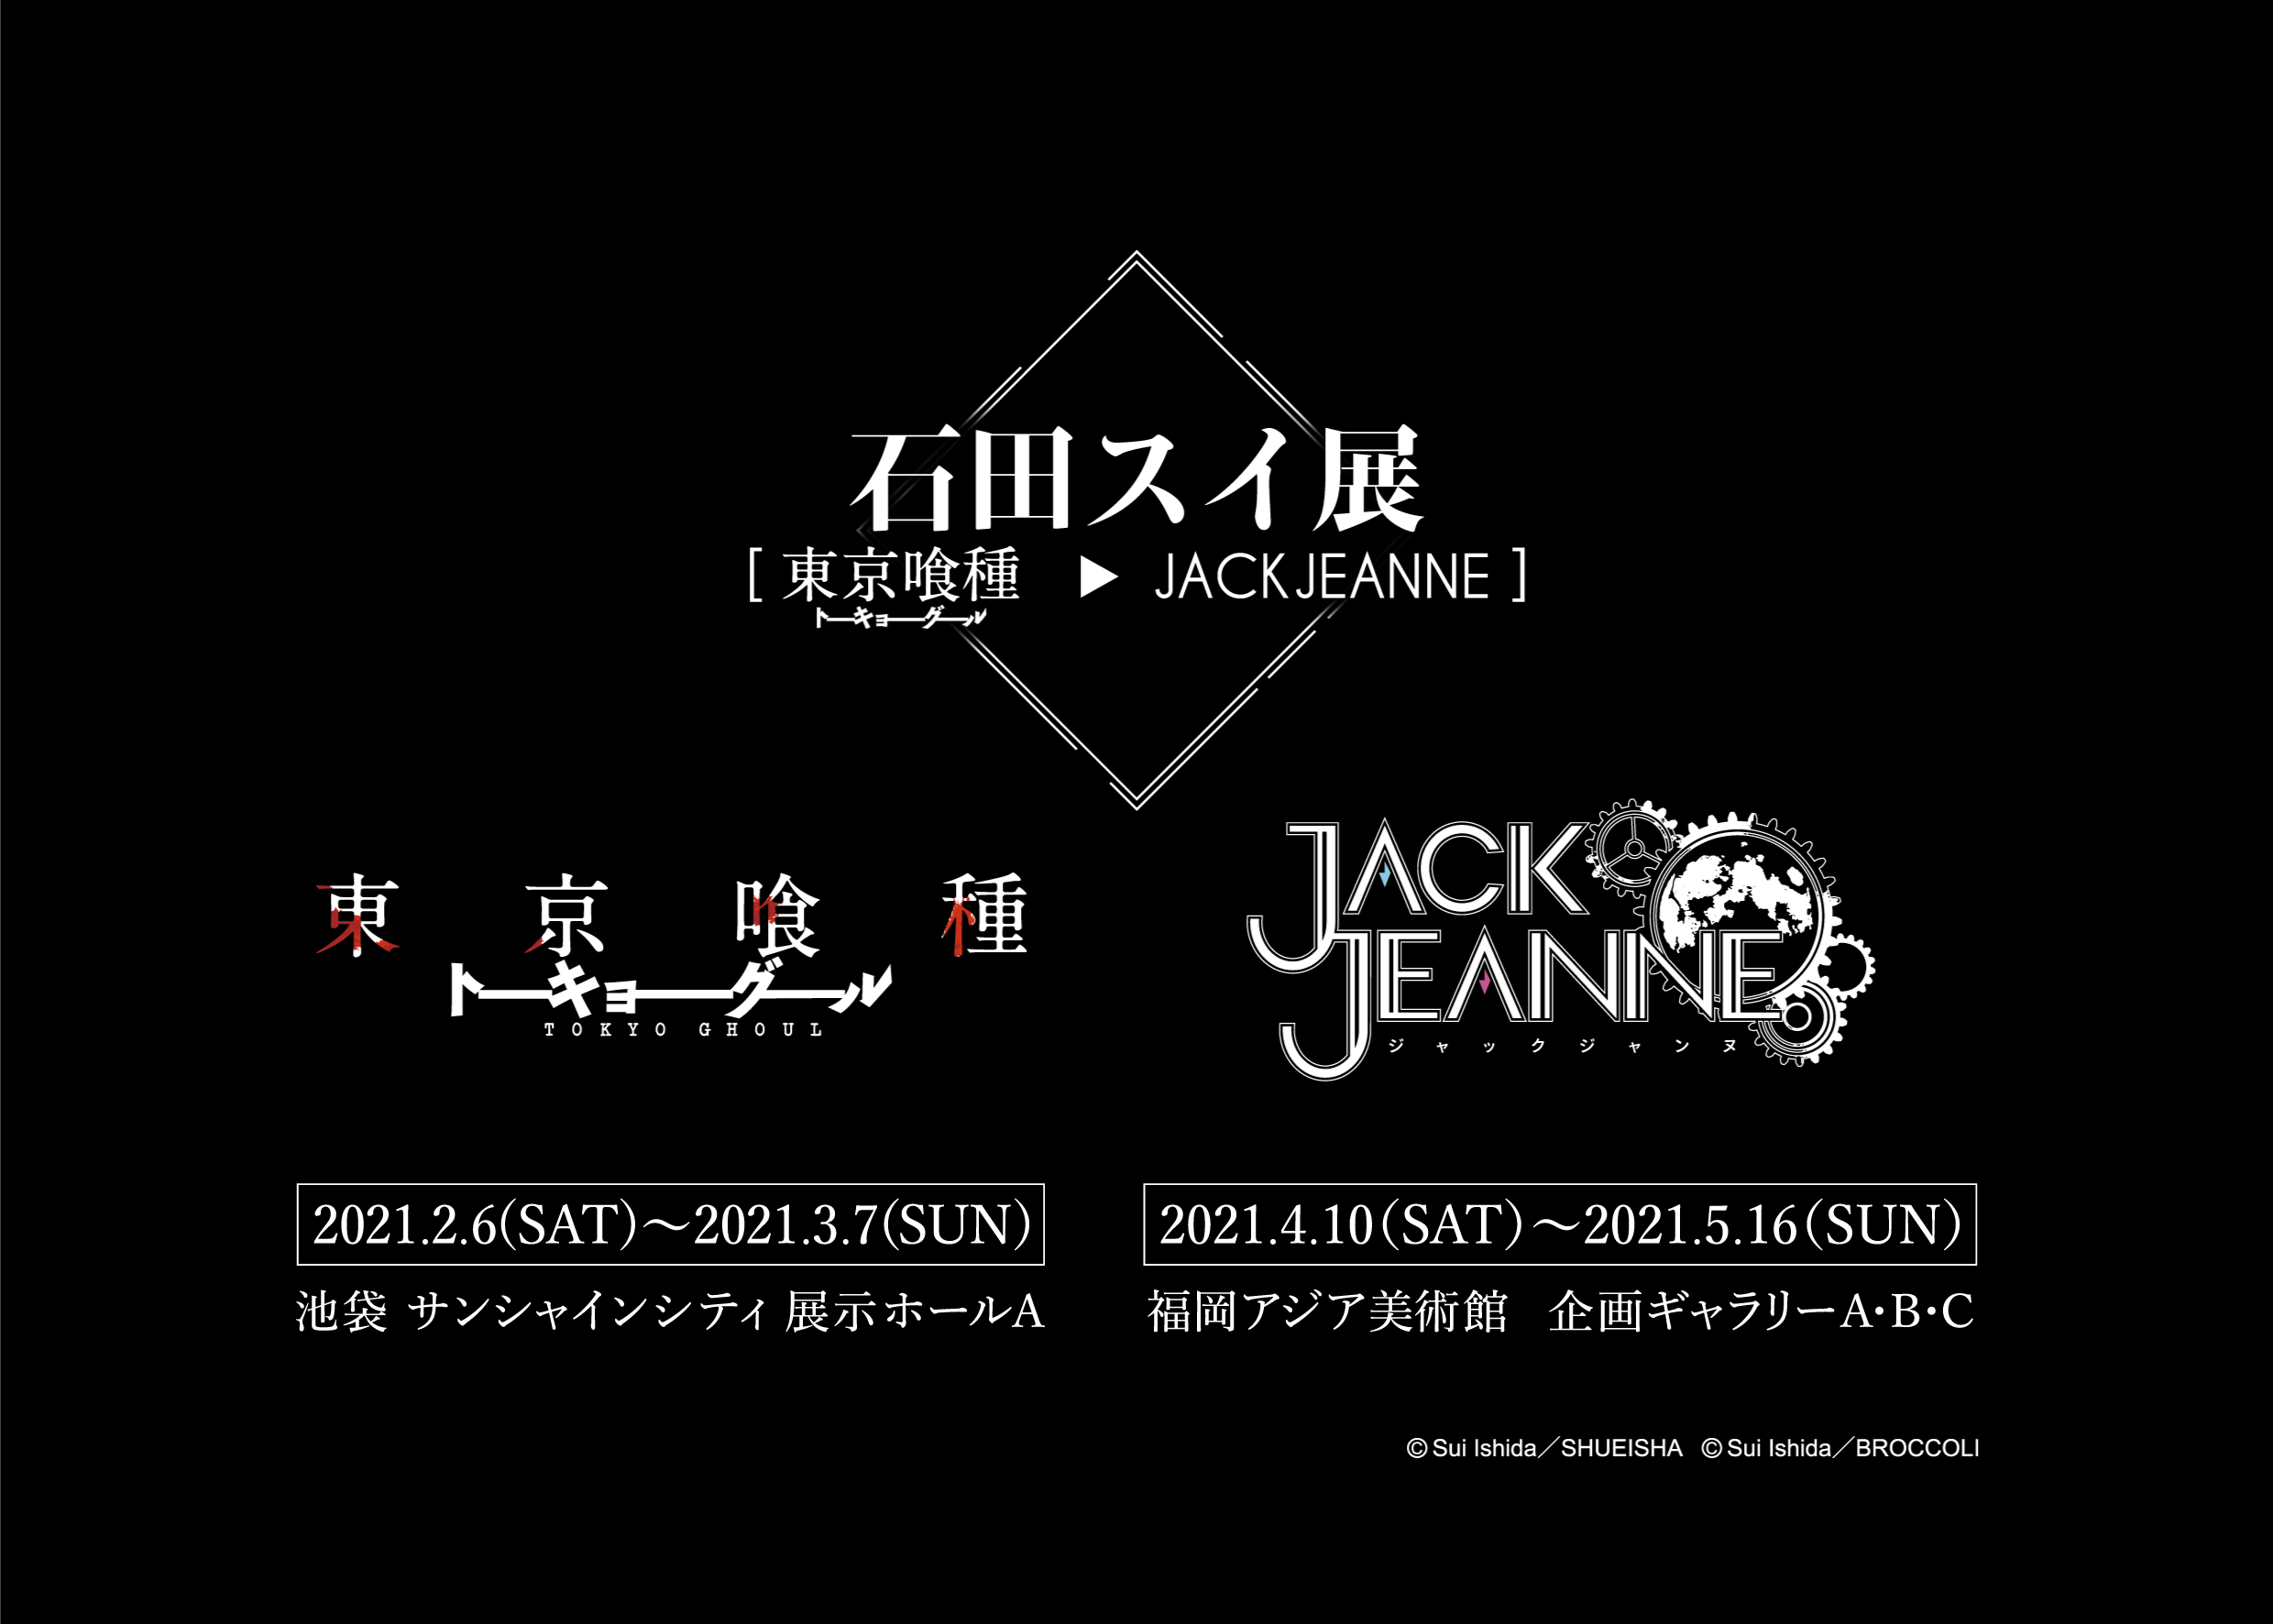 石田スイ展 東京喰種 Jackjeanne 21年4月に福岡で開催決定 ニュース アルトネ